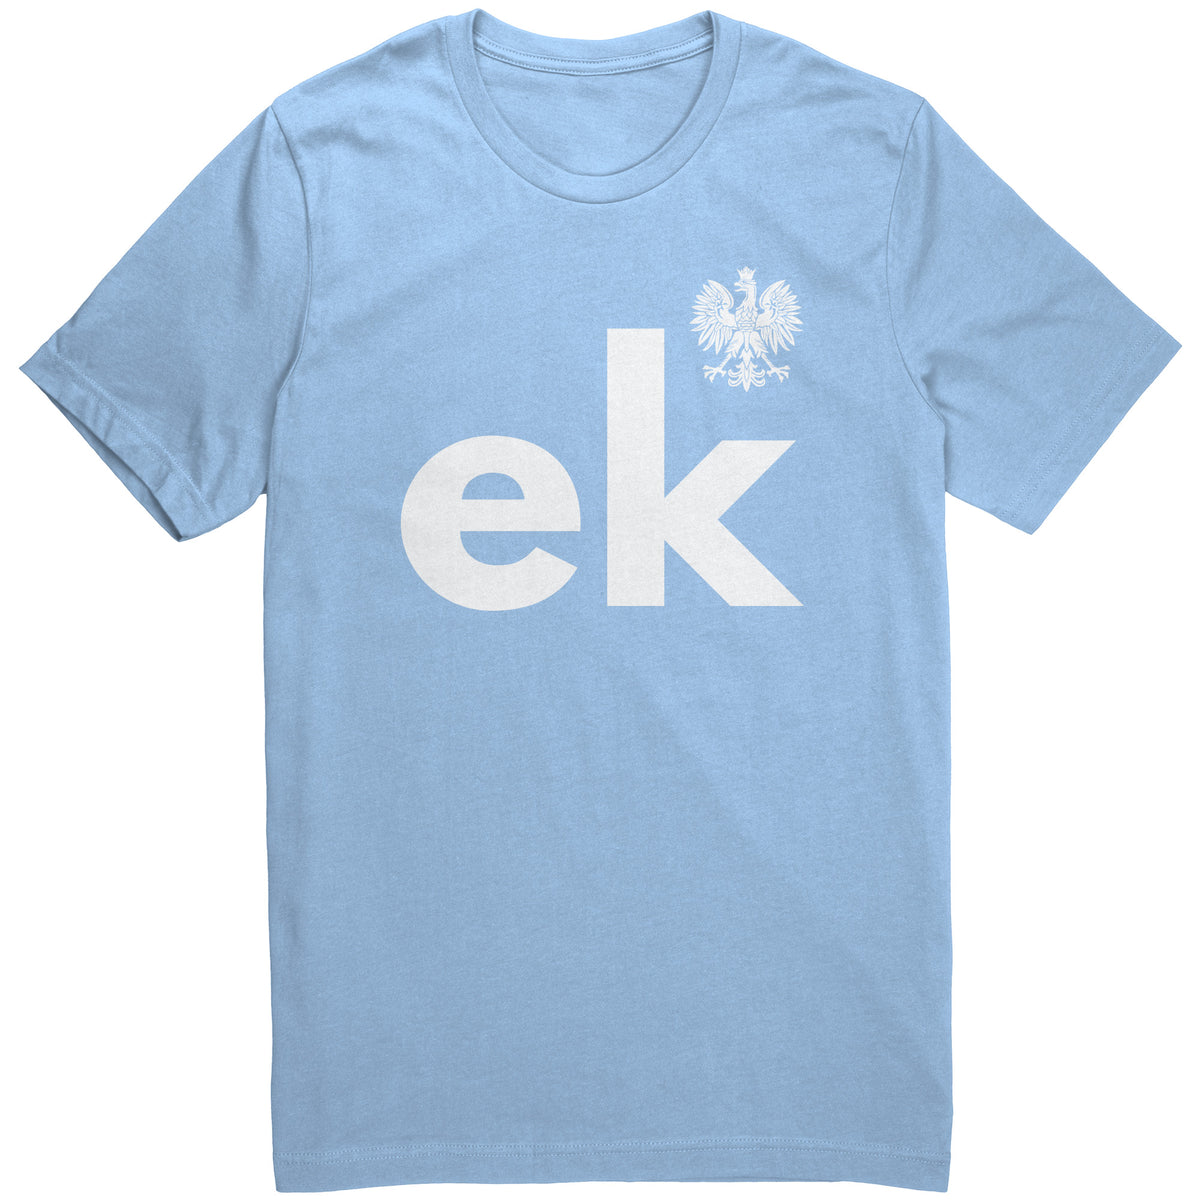 Last – eagle name My unisex shirt with -ek Polish Heritage